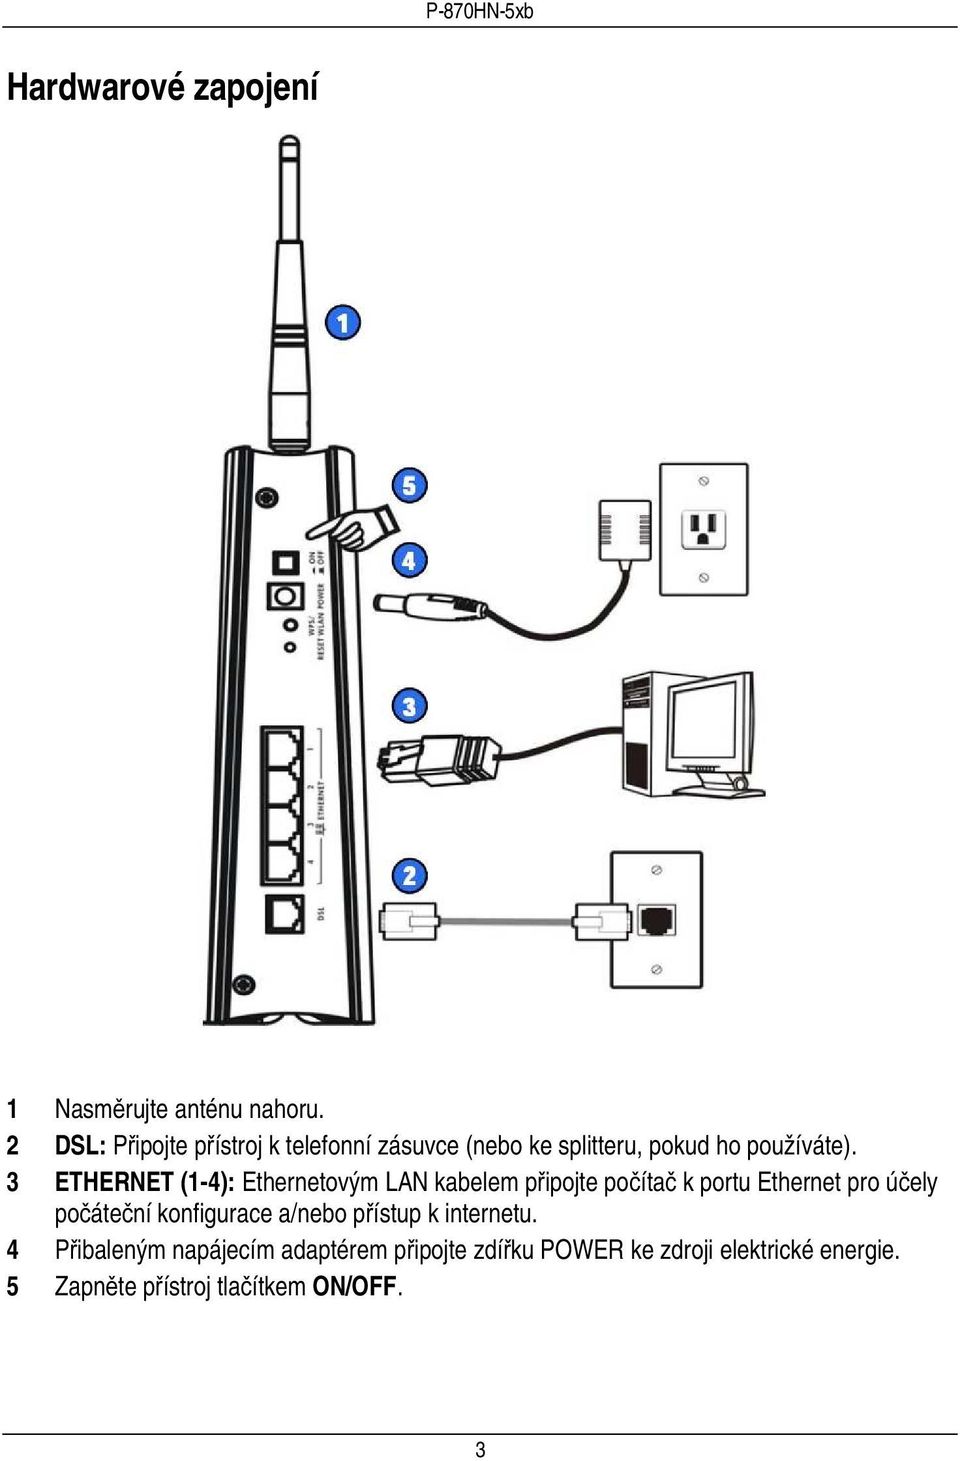 3 ETHERNET (1-4): Ethernetovým LAN kabelem připojte počítač k portu Ethernet pro účely počáteční